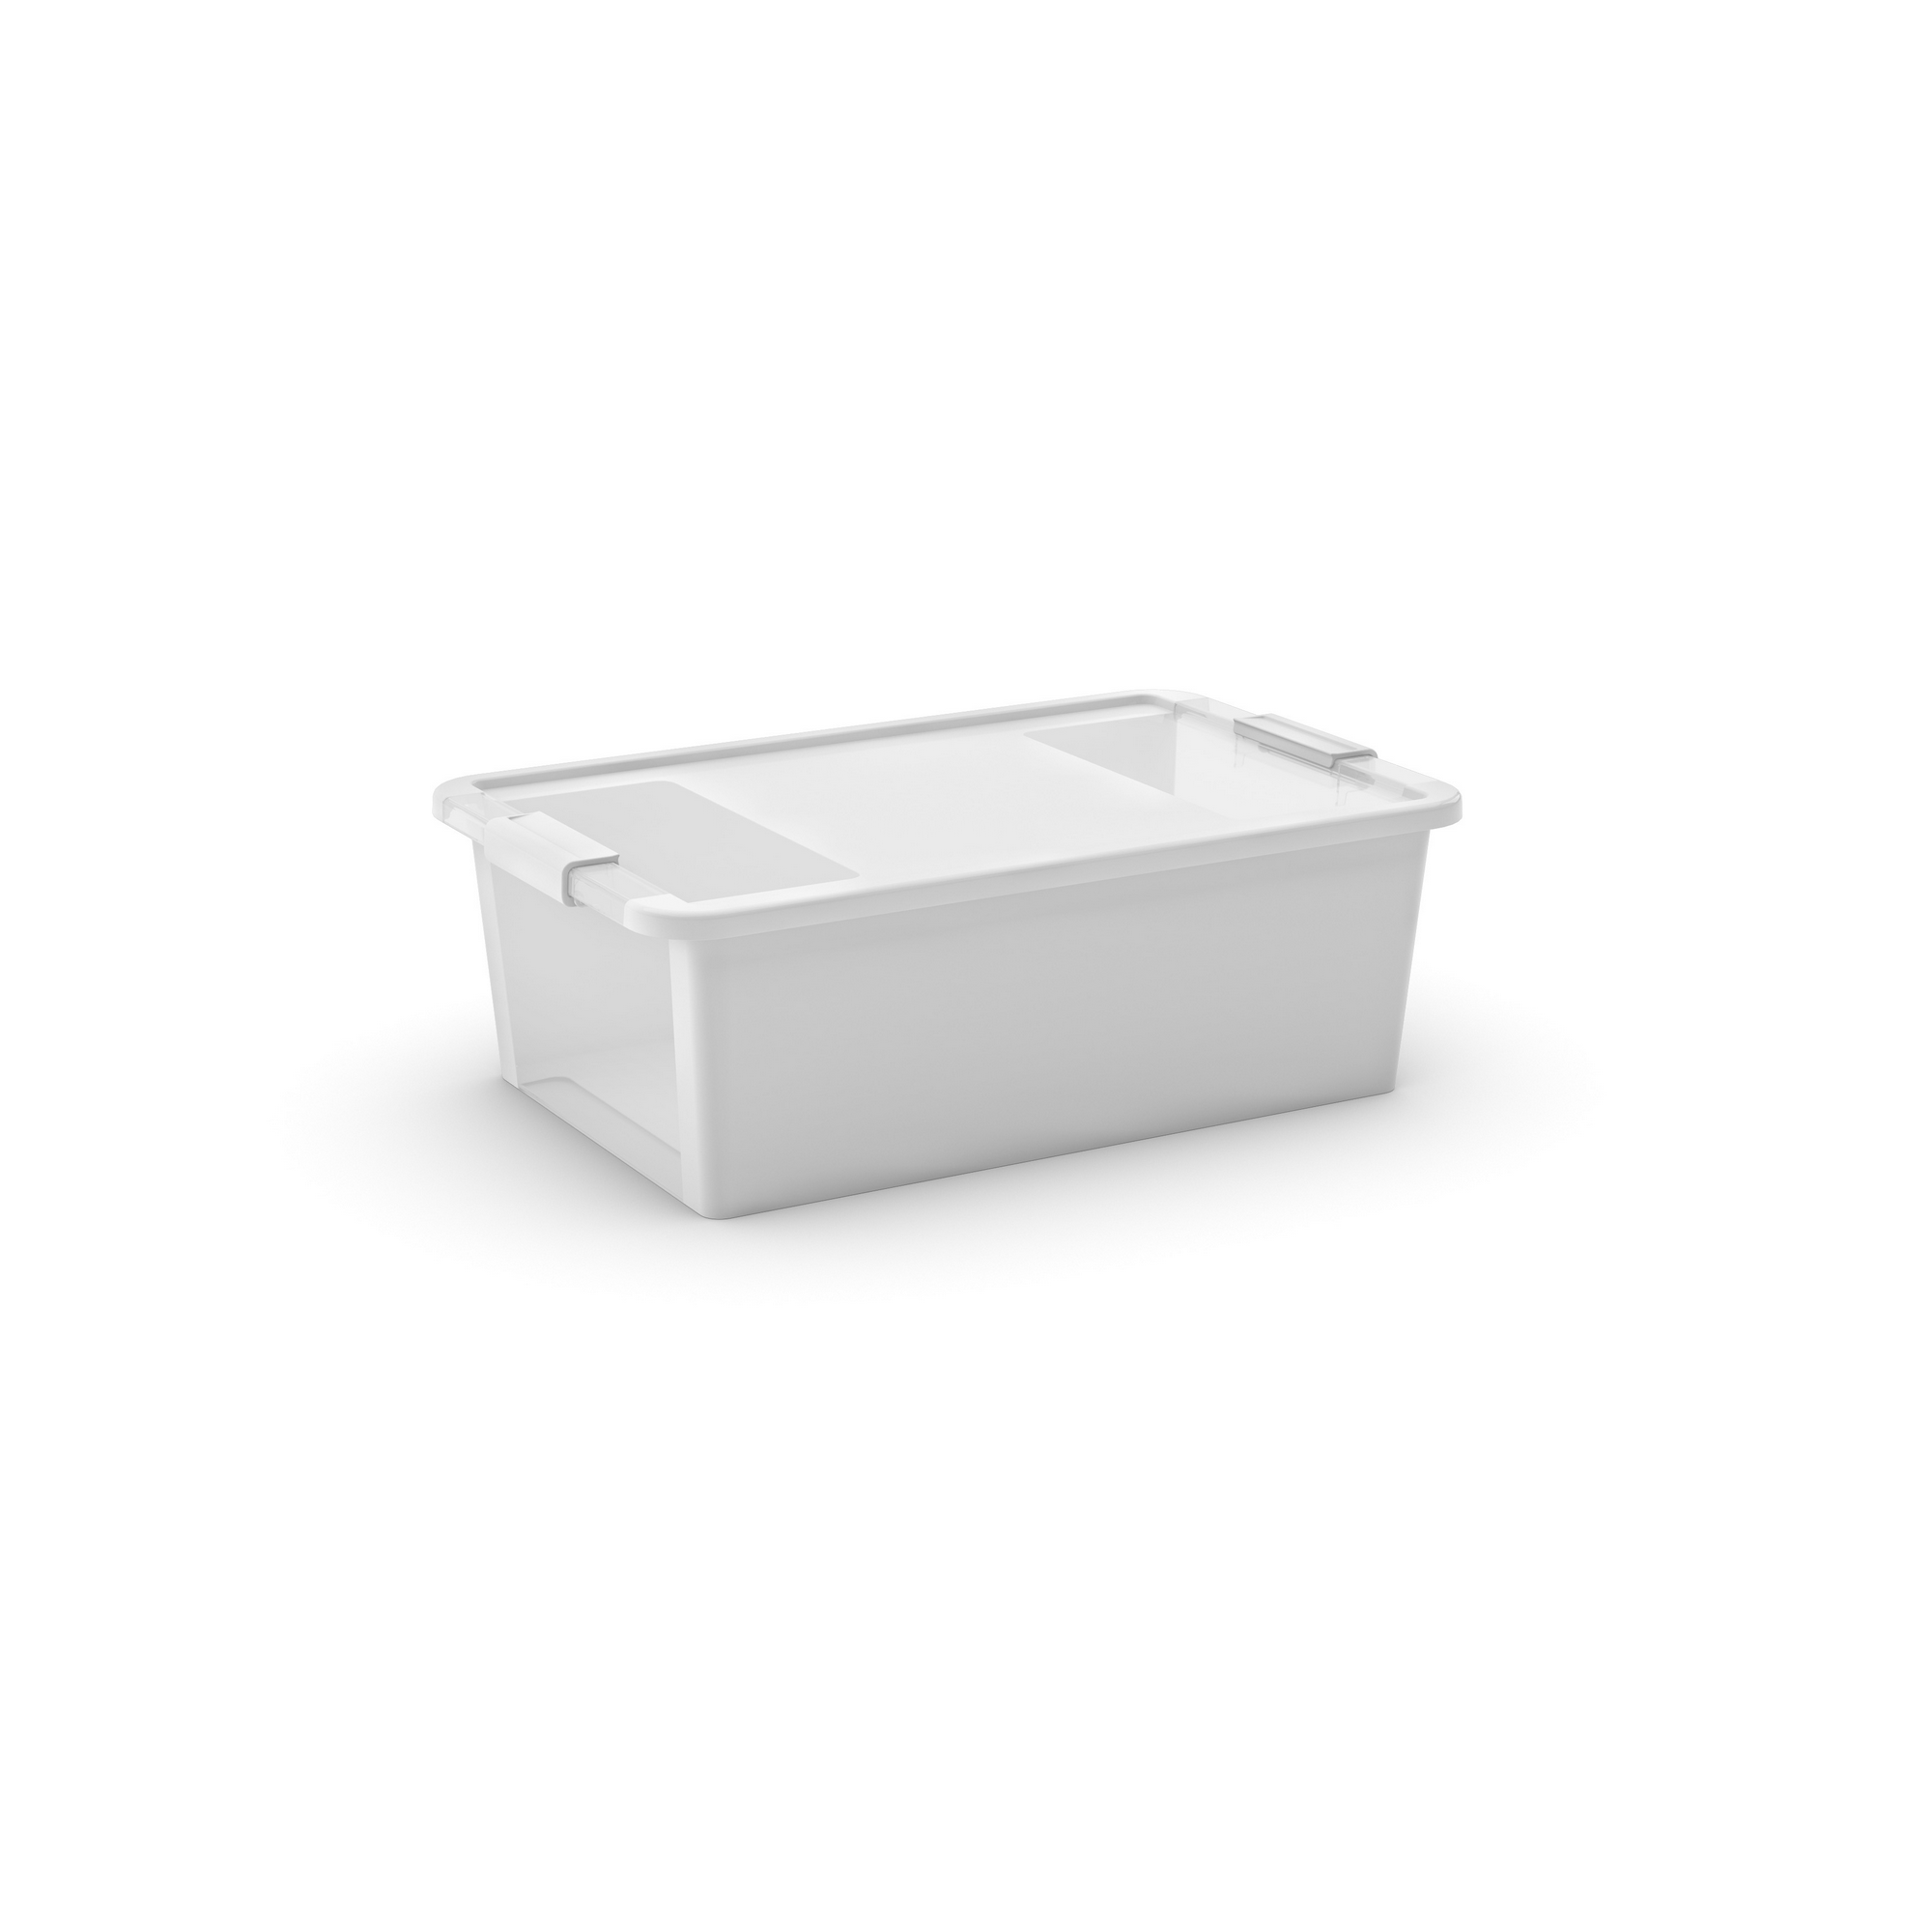 Aufbewahrungsbox 'BI Box M' weiß/transparent 55 x 35 x 19 cm + product picture